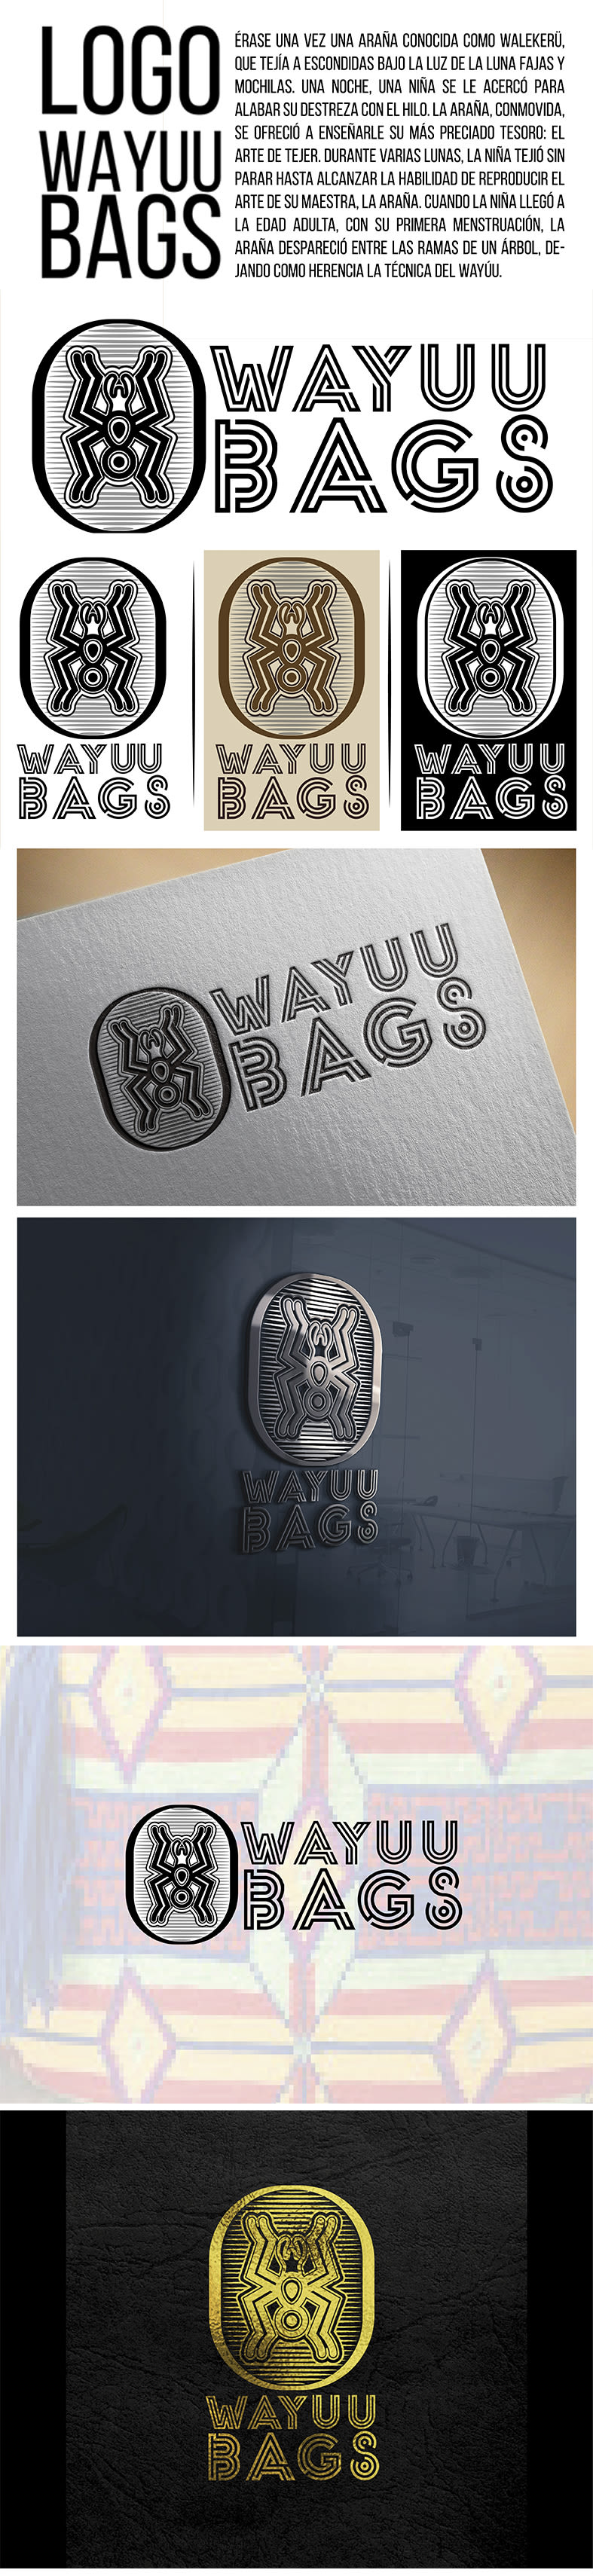 Comparte y gana: tu logotipo analizado por Sagi Haviv 1